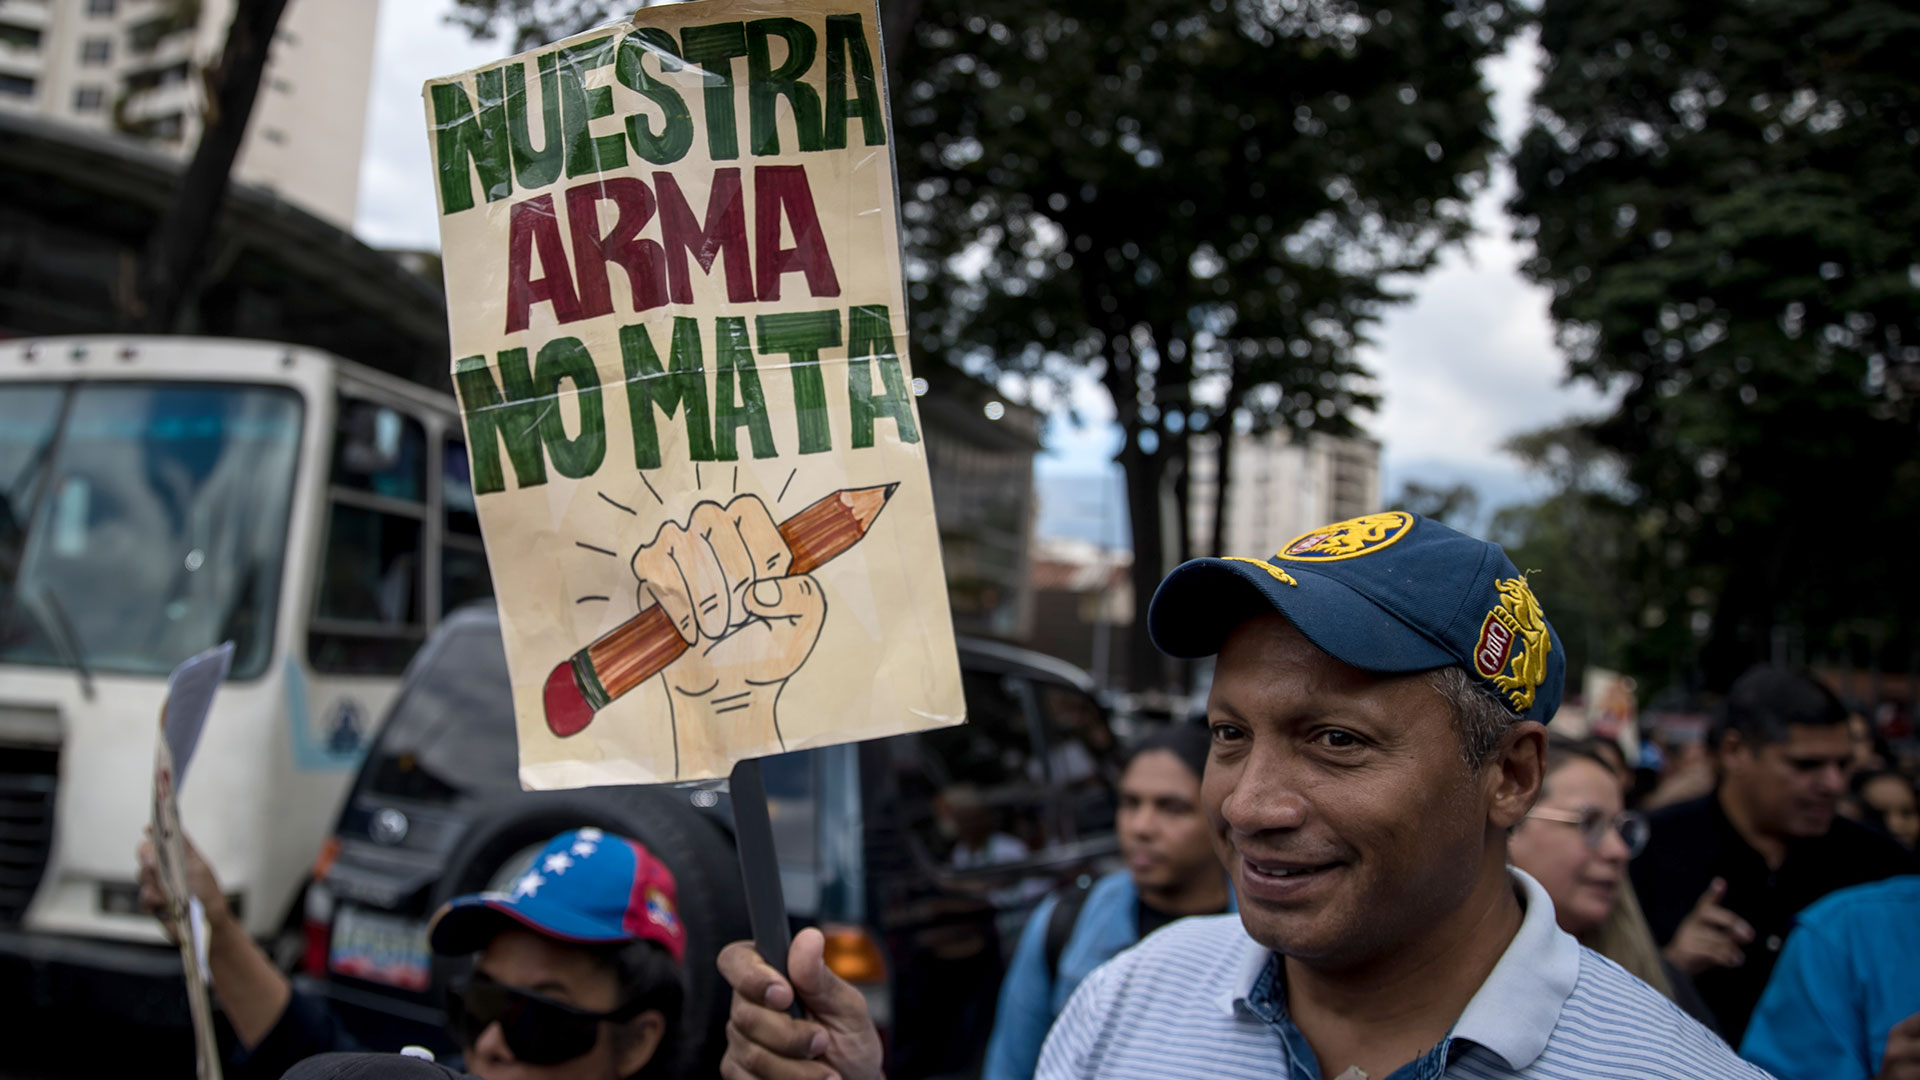 "Nuestra arma no mata", reza el cartel de un docente (EFE/Miguel Gutiérrez)